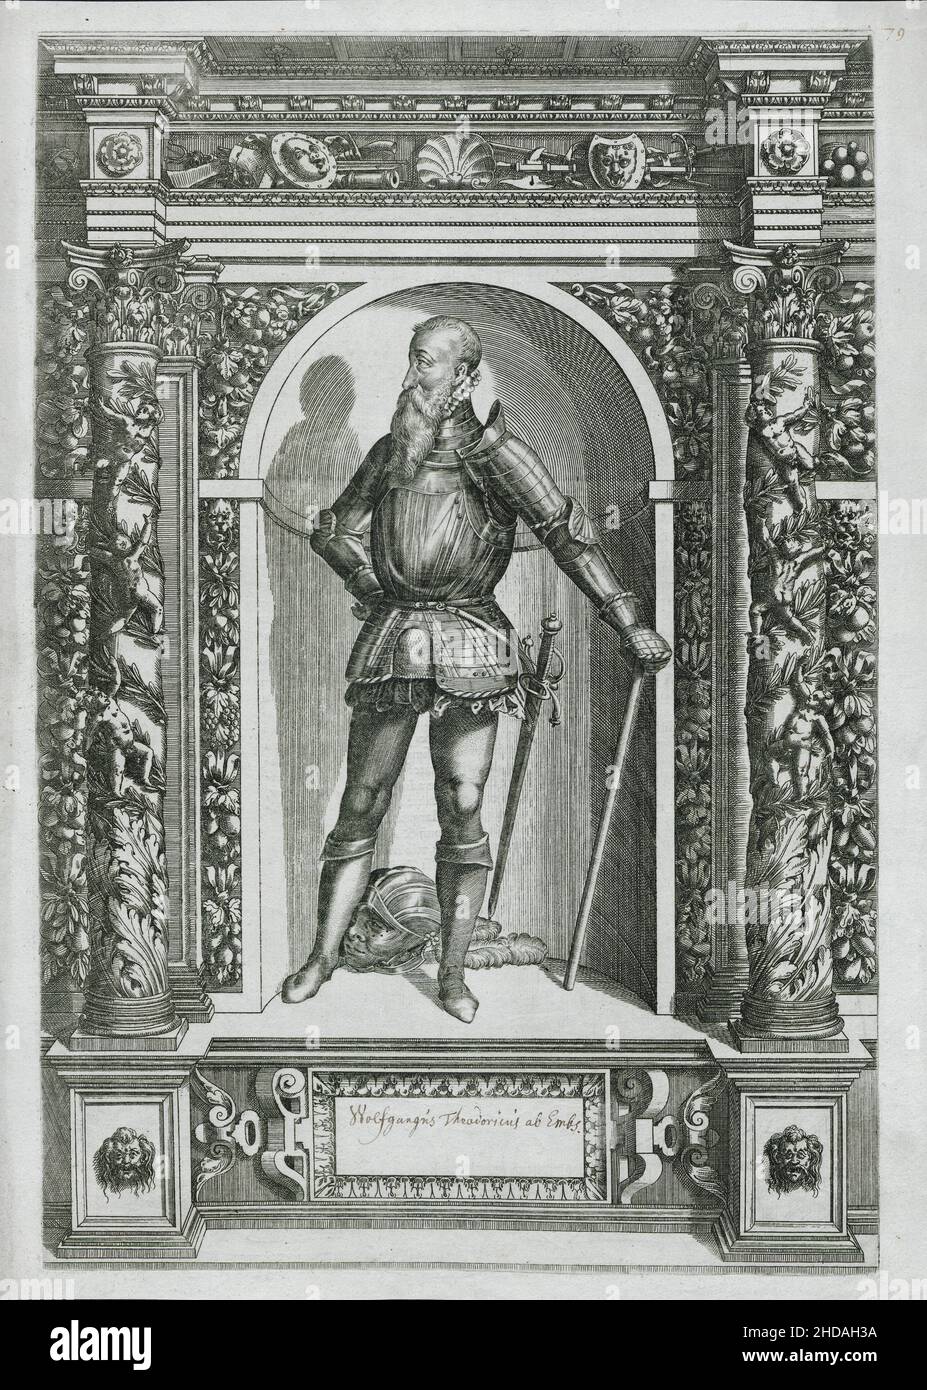 Wolfgangus Theodoricus ab EMBS. 1601 dieser Stich aus dem Buch der Waffensammlung Erzherzog Ferdinand, der 16 erstmals in Innsbruck erschien Stockfoto